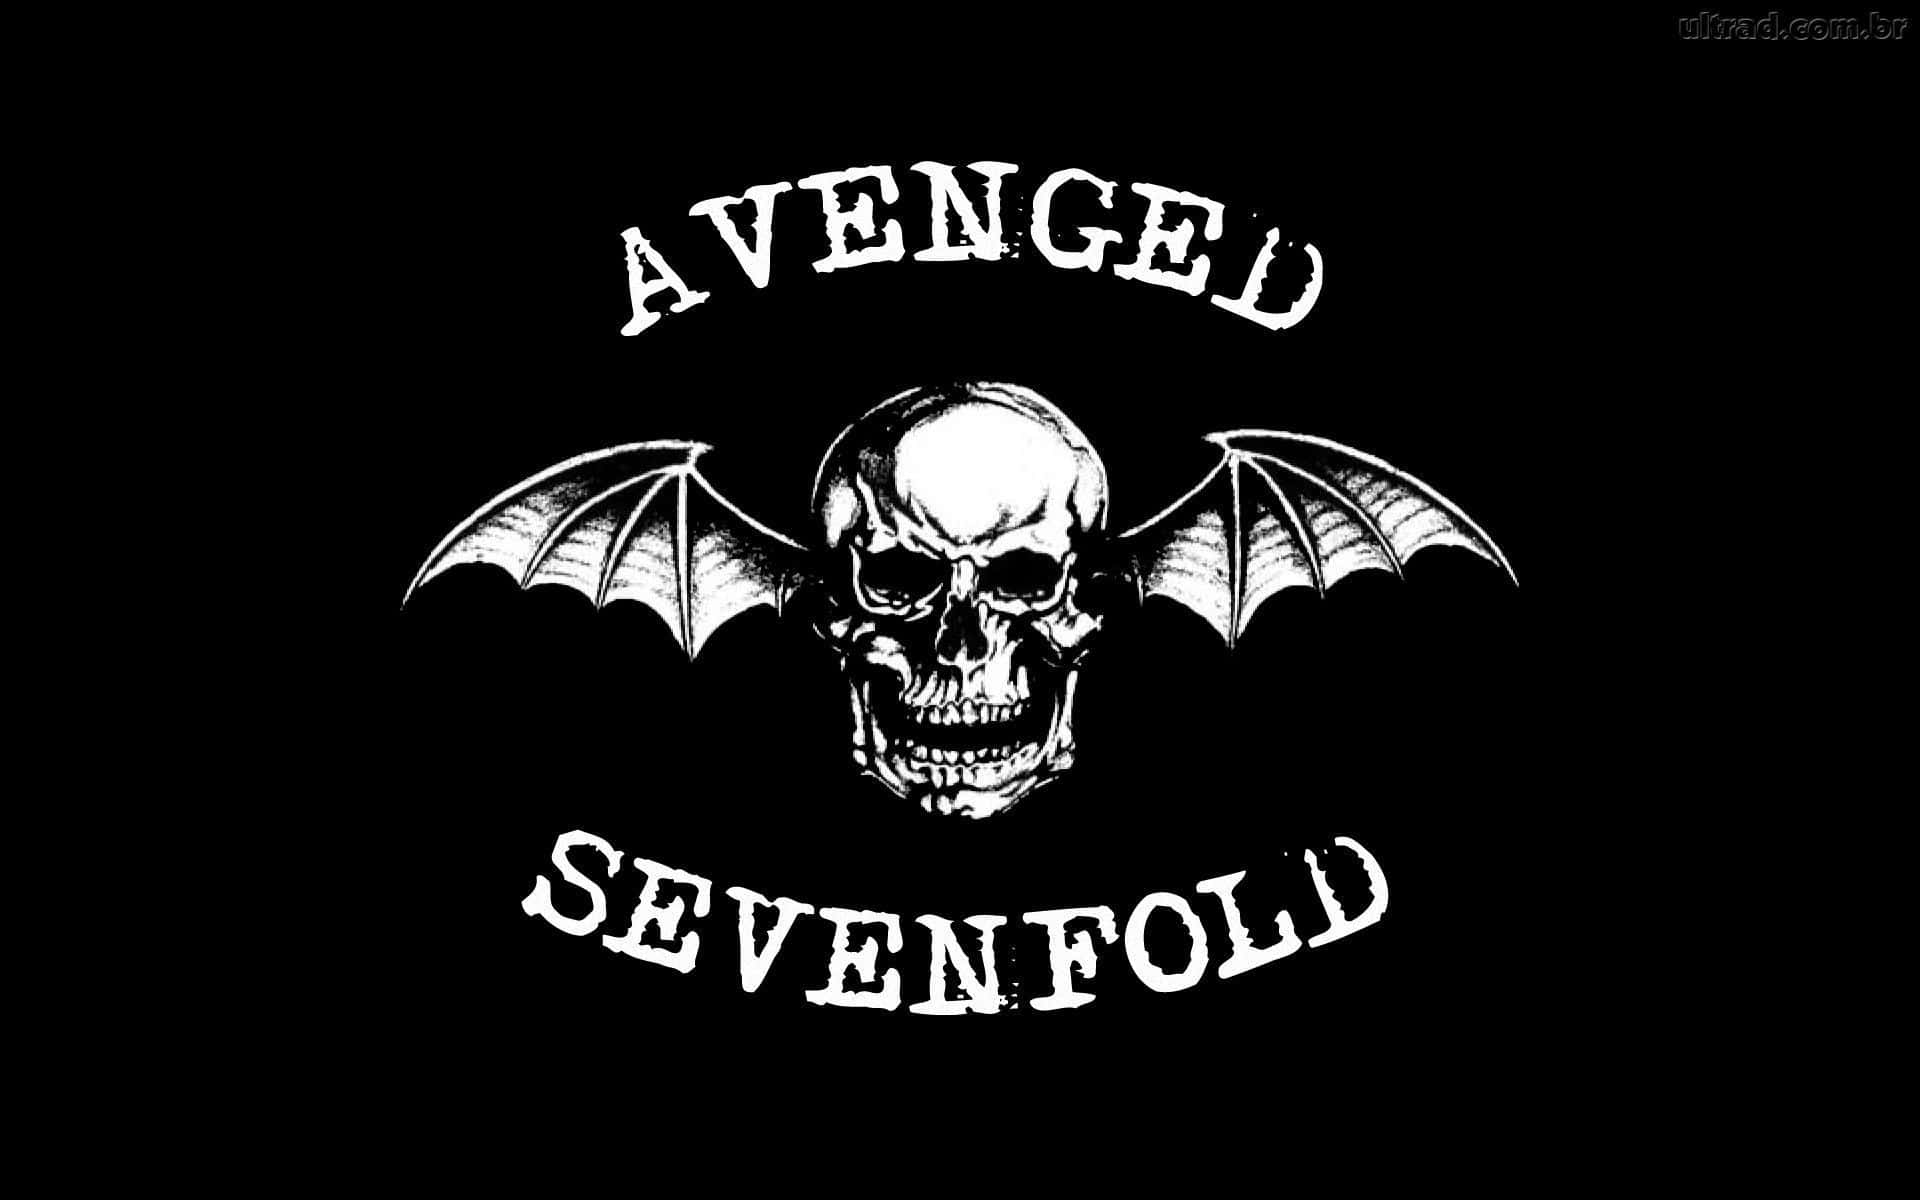 Avengedsevenfold Logo Auf Schwarzem Hintergrund. Wallpaper